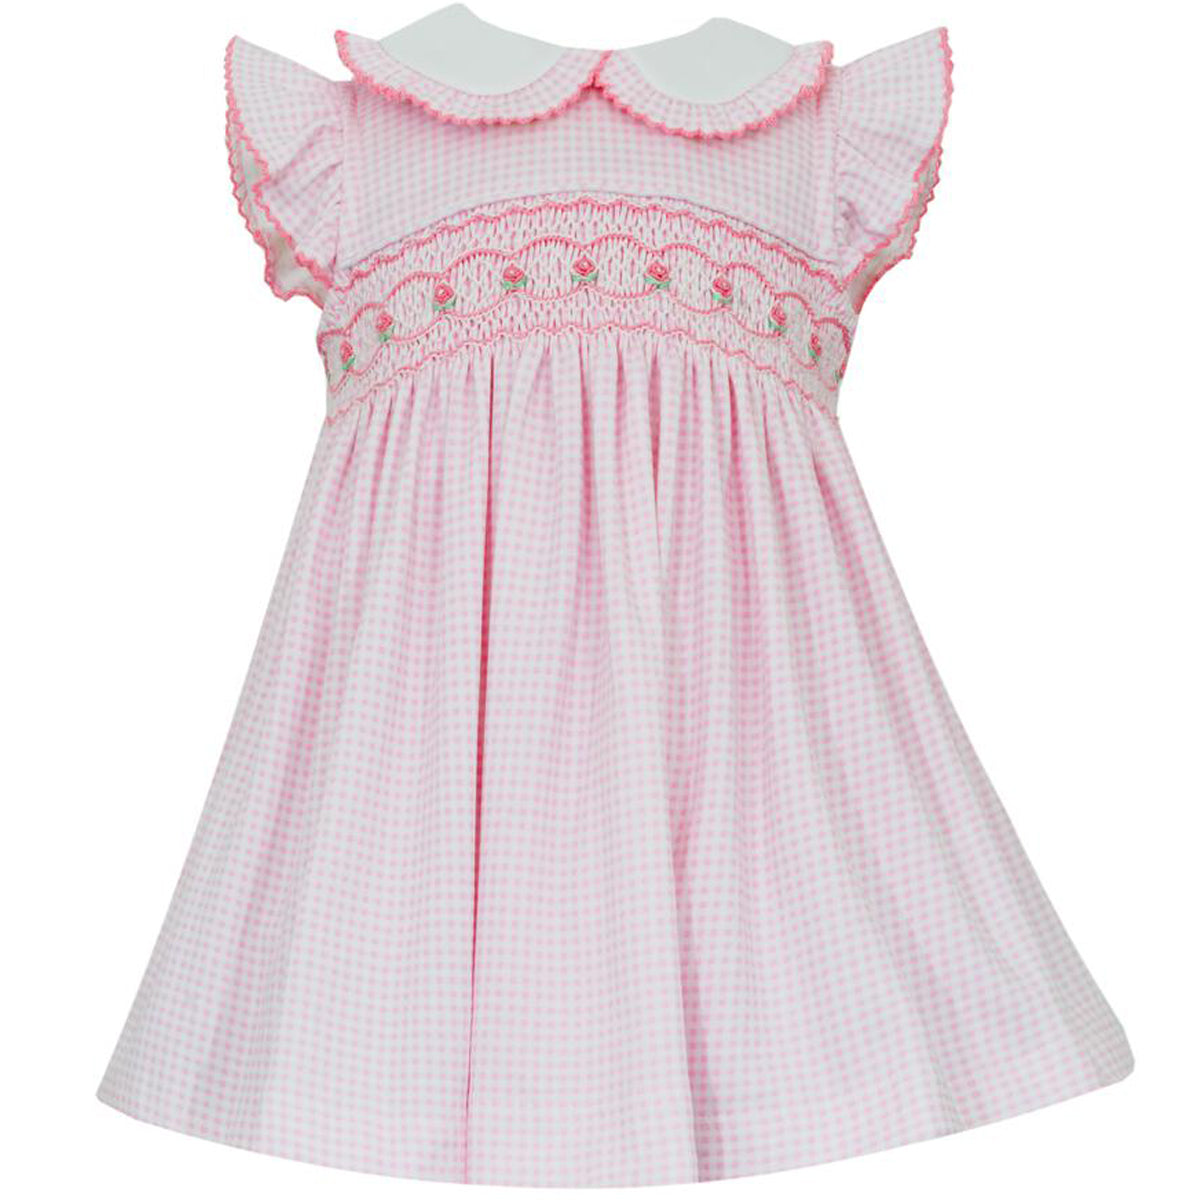 Amelia Pink Gingham Smocked Knit Sleeveless Dress